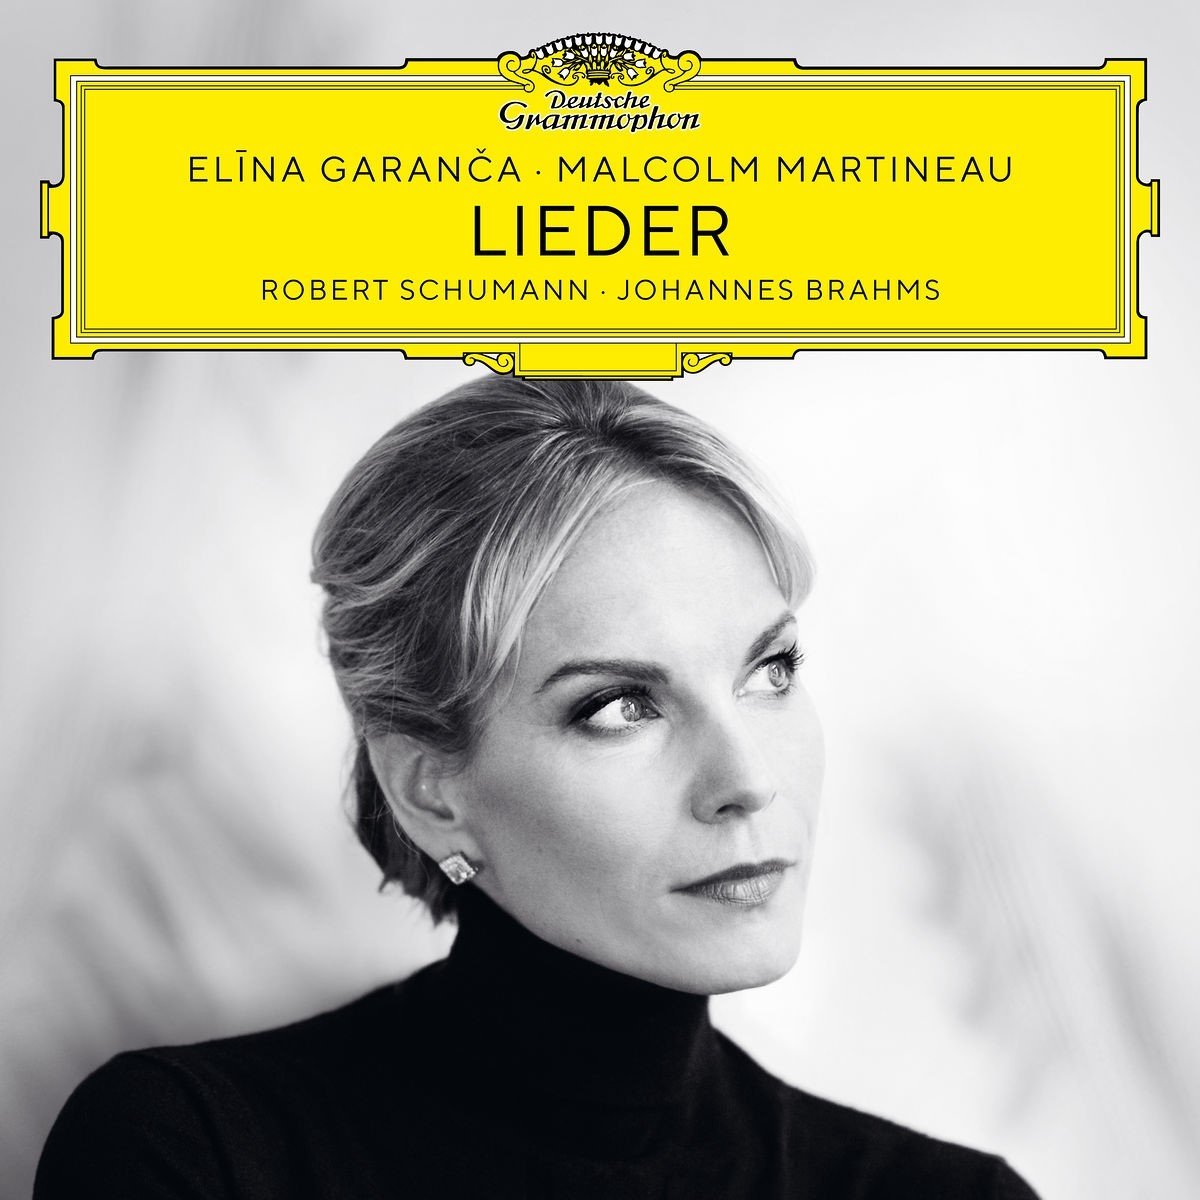 Schumann & Brahms: Lieder | Robert Schumann, Johannes Brahms, Elina Garanca